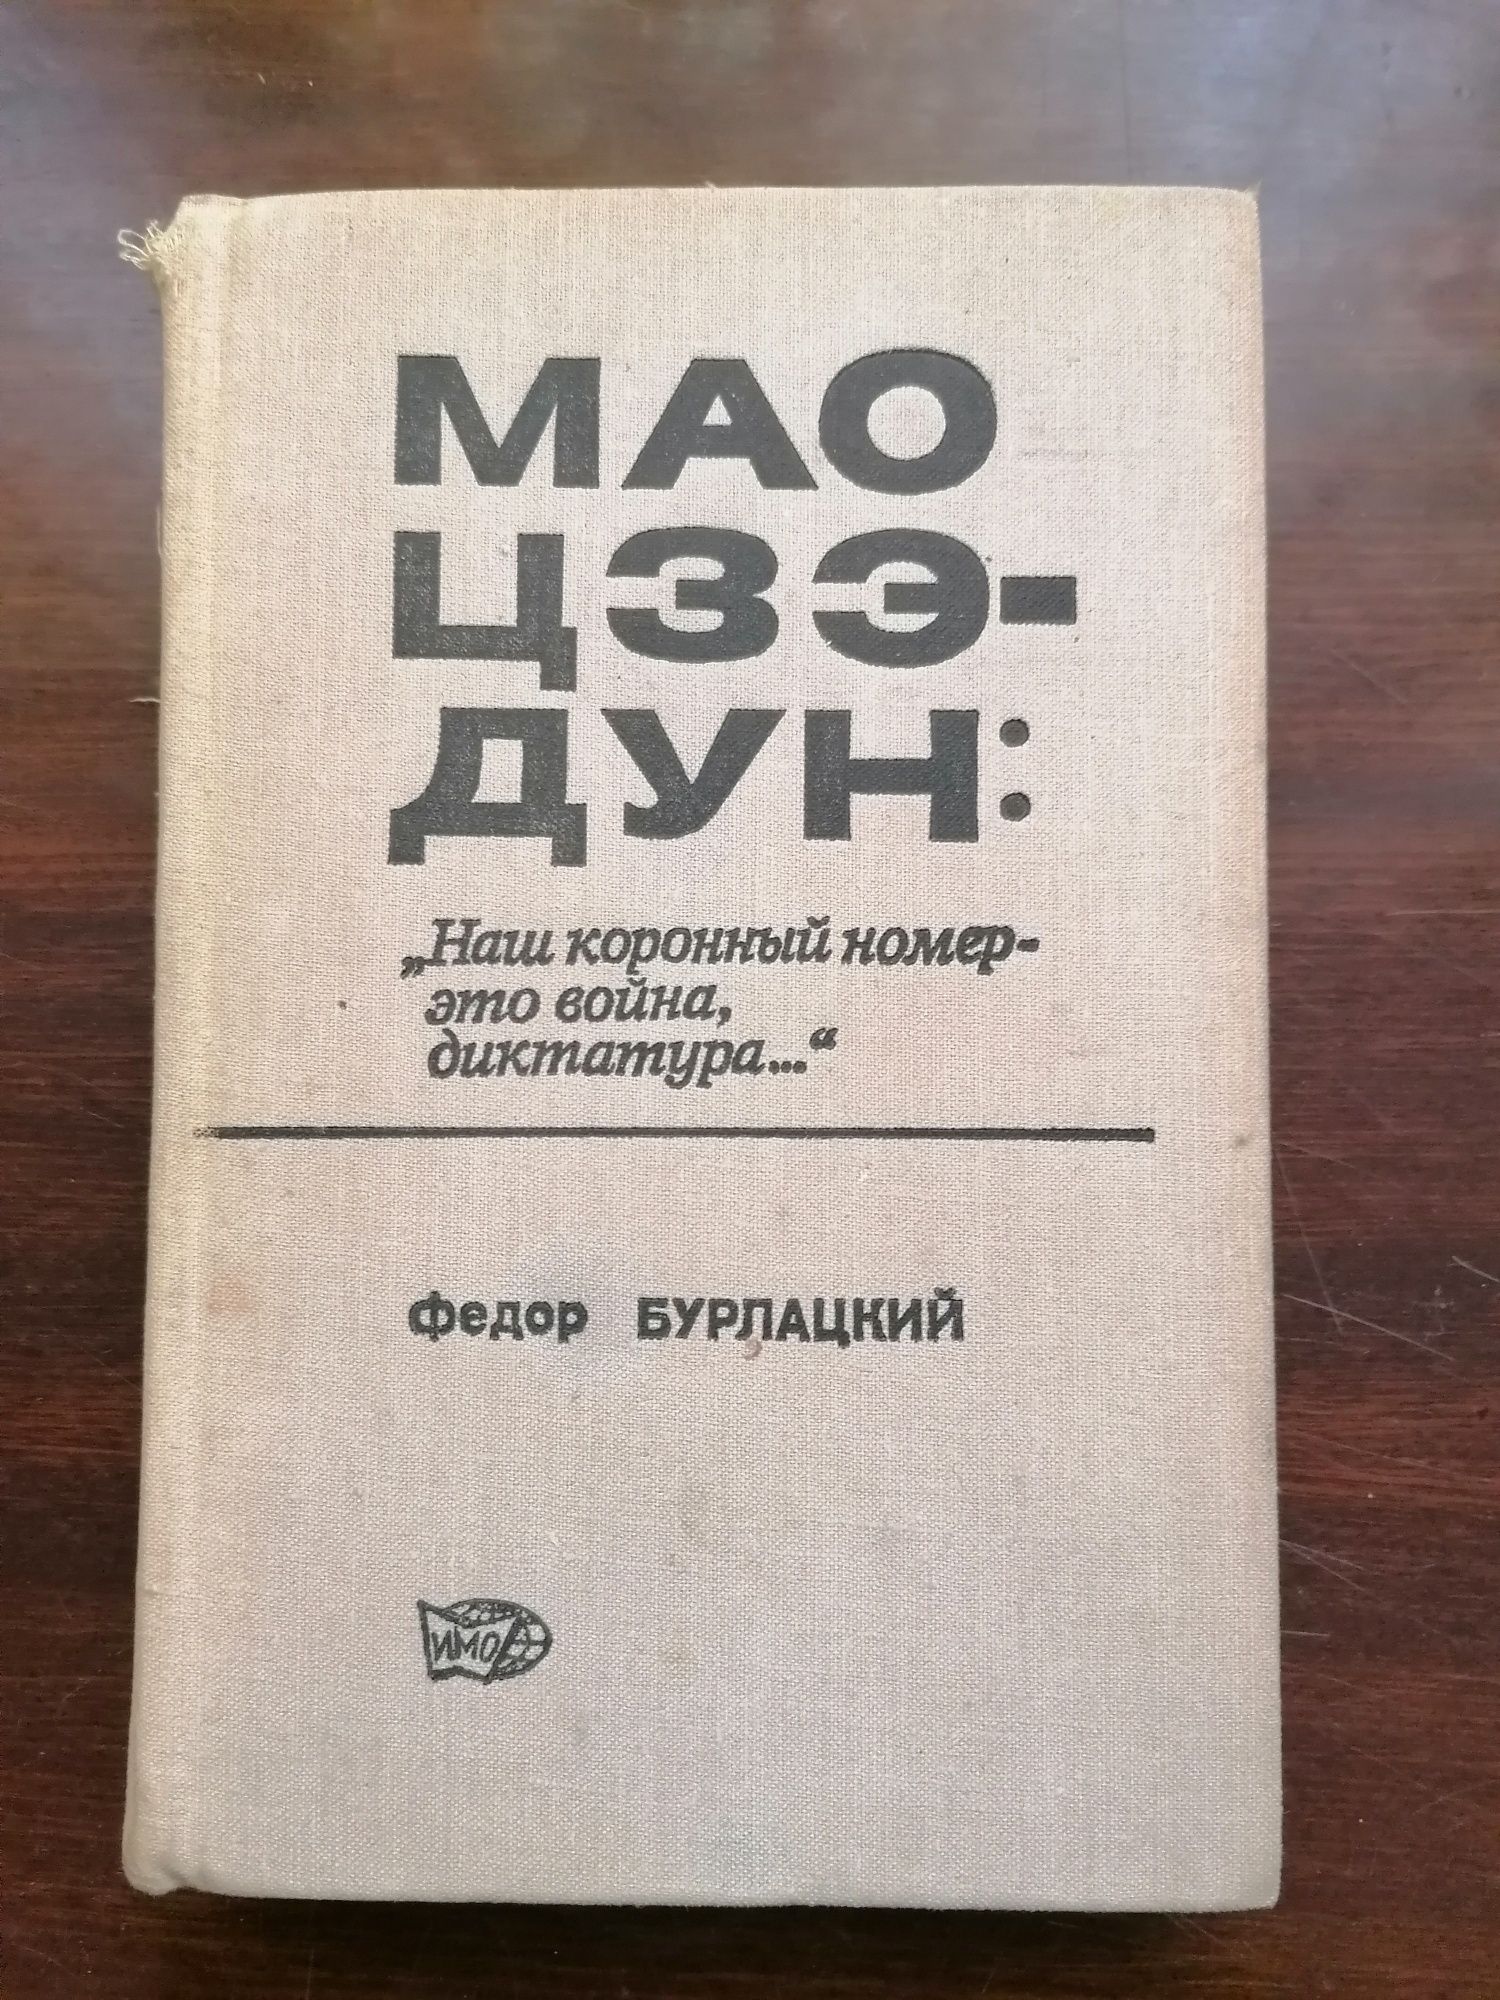 Продам книги Мао Цзедун и его наследники. 1980 г. Ф. Бурлацкий.